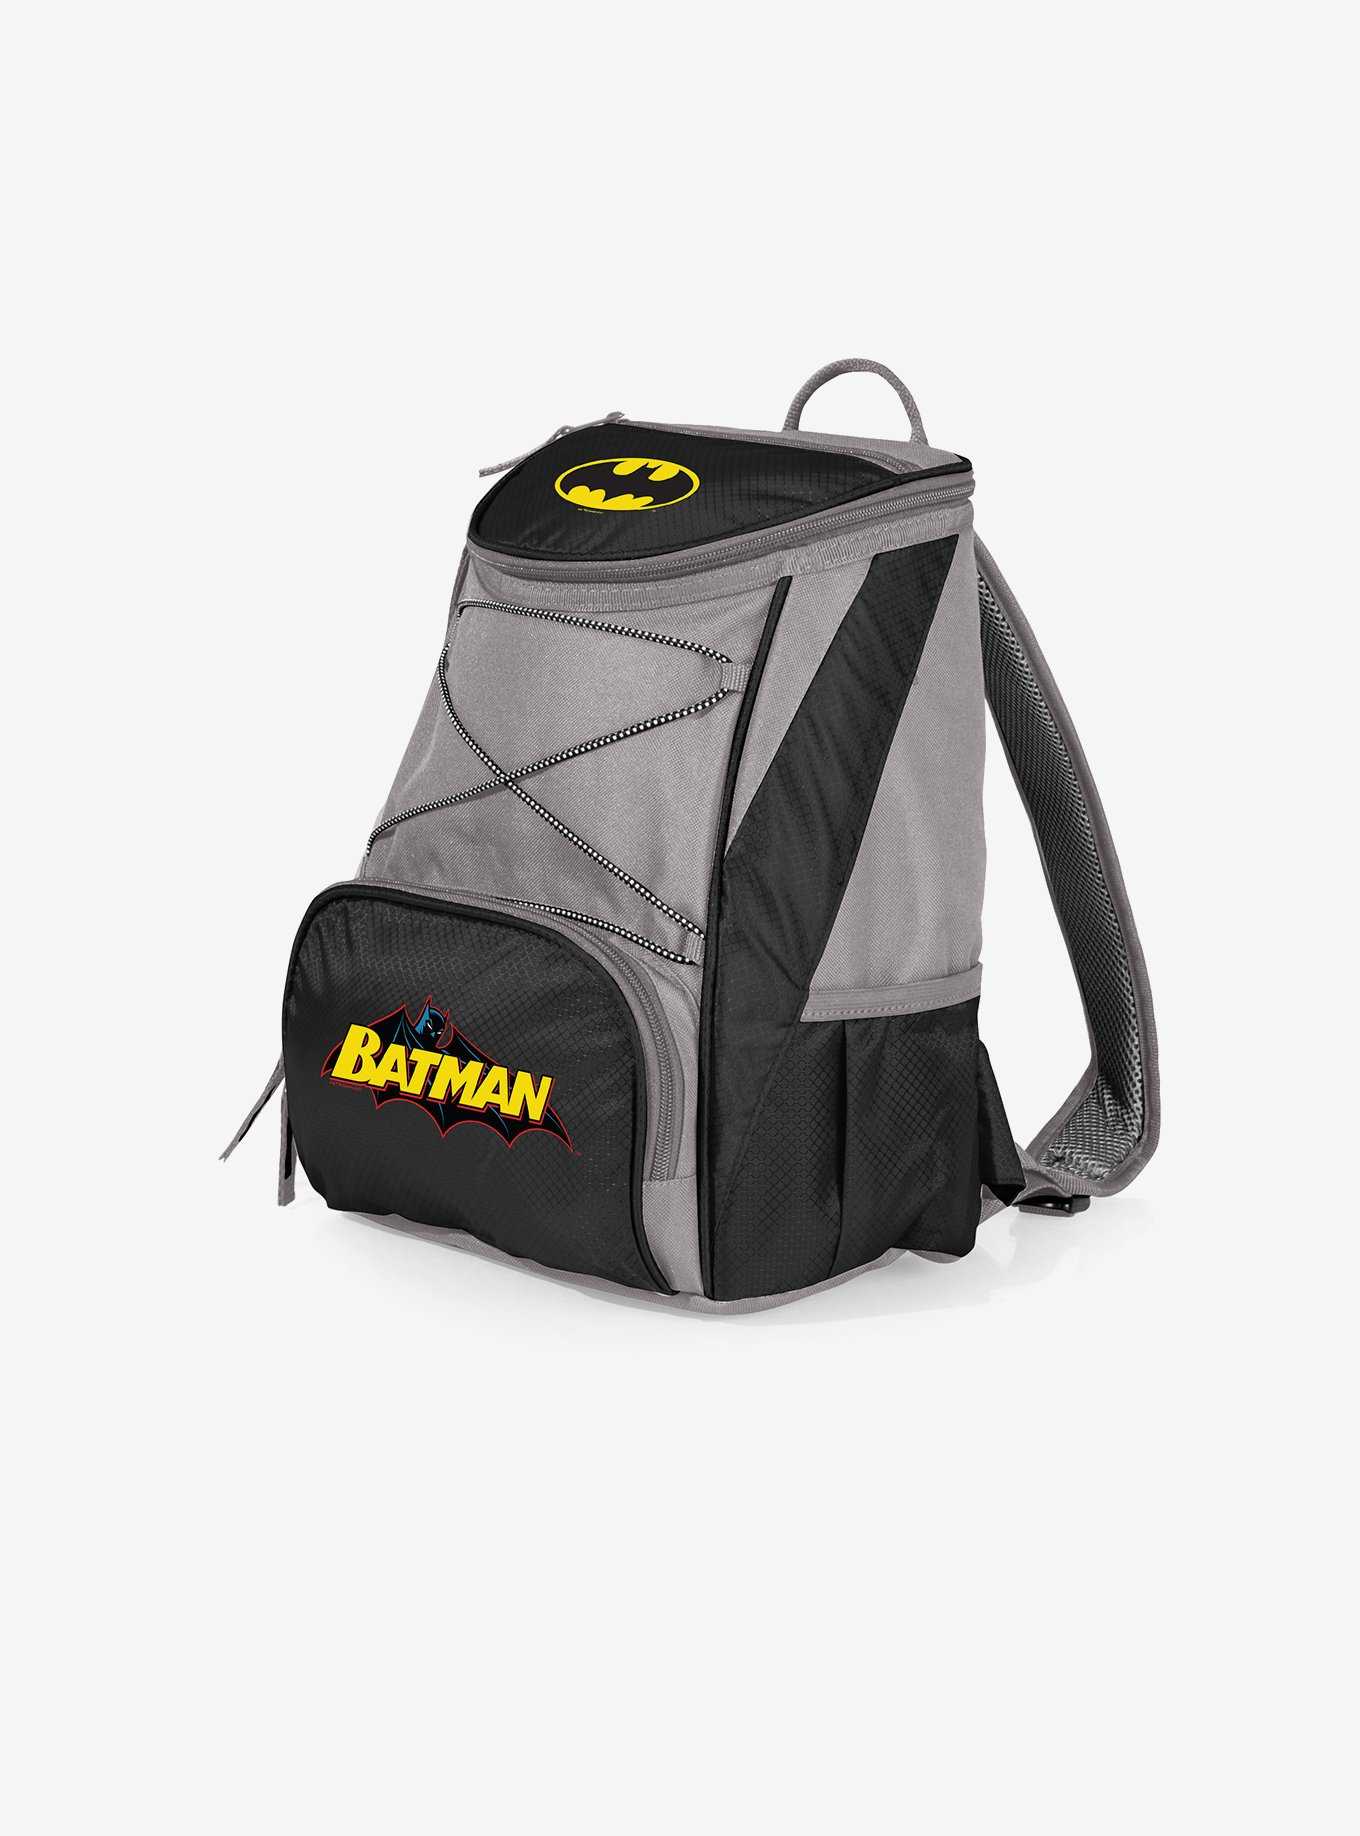 DC Comics Batman PTX Backpack Cooler, , hi-res